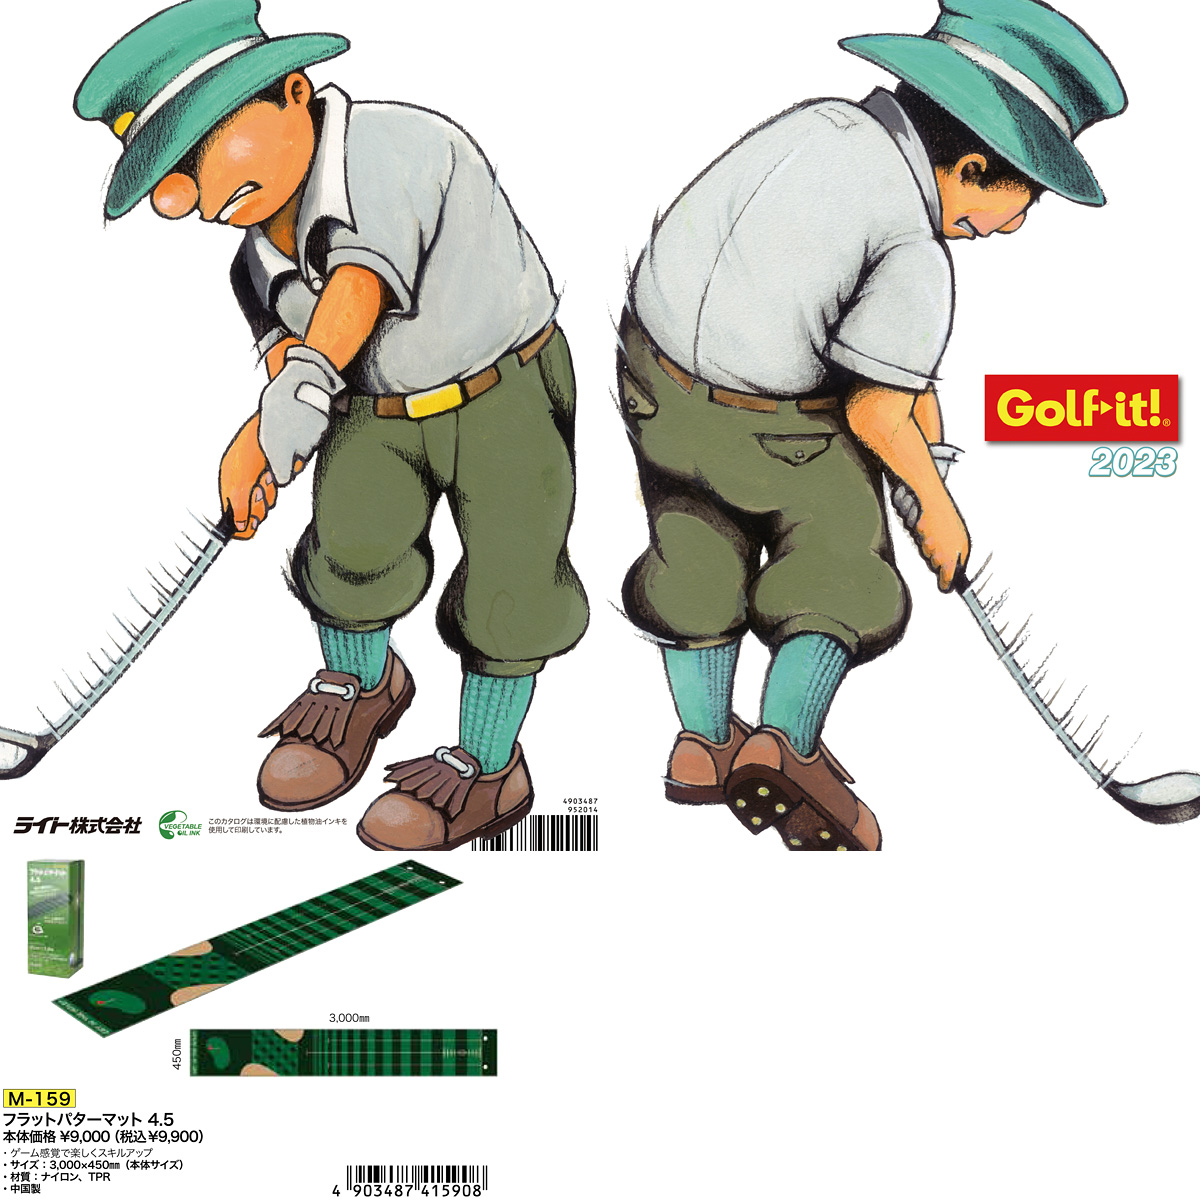 Golfit! ゴルフイット ライト正規品 フラットパターマット 4.5 「M-159